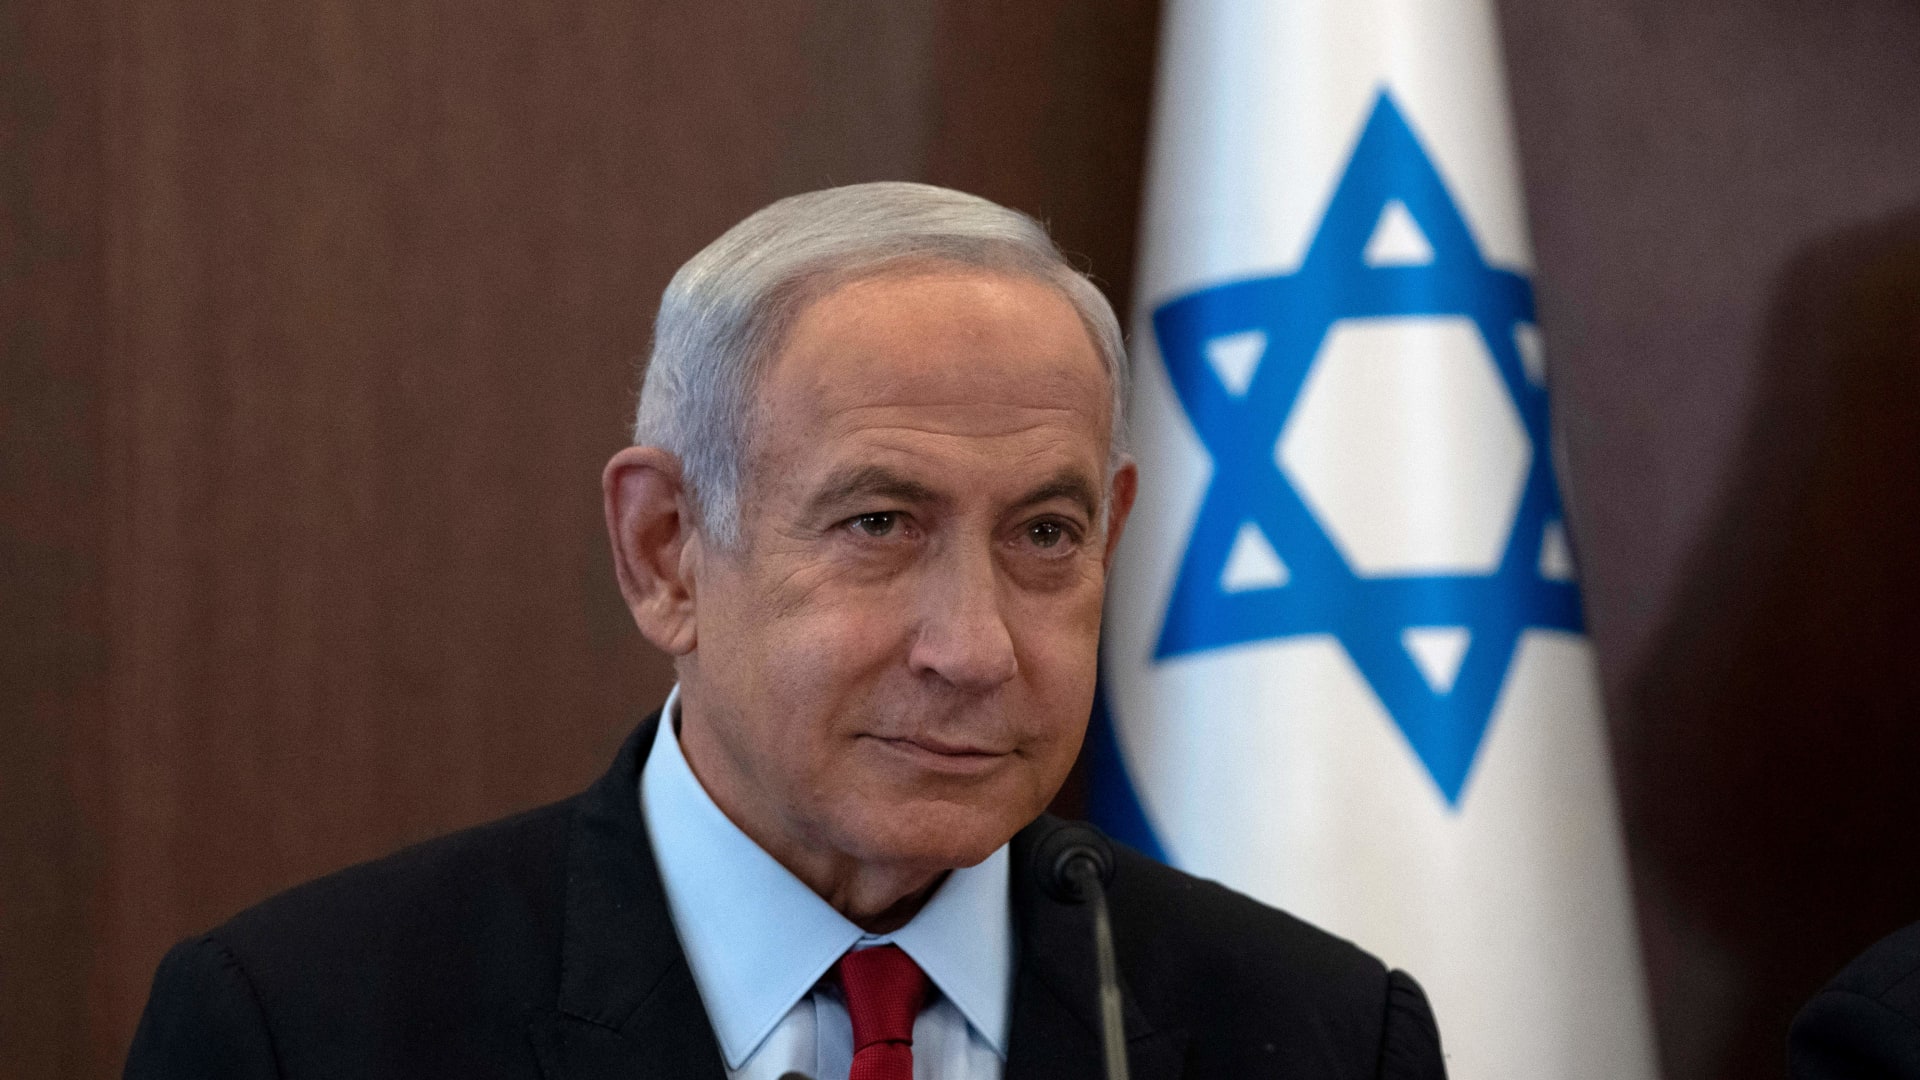   غدا نرفع شكاية  ضد مسؤولي ومجرمي الحرب على رأسهم نتانياهو وبعض الوزراء  